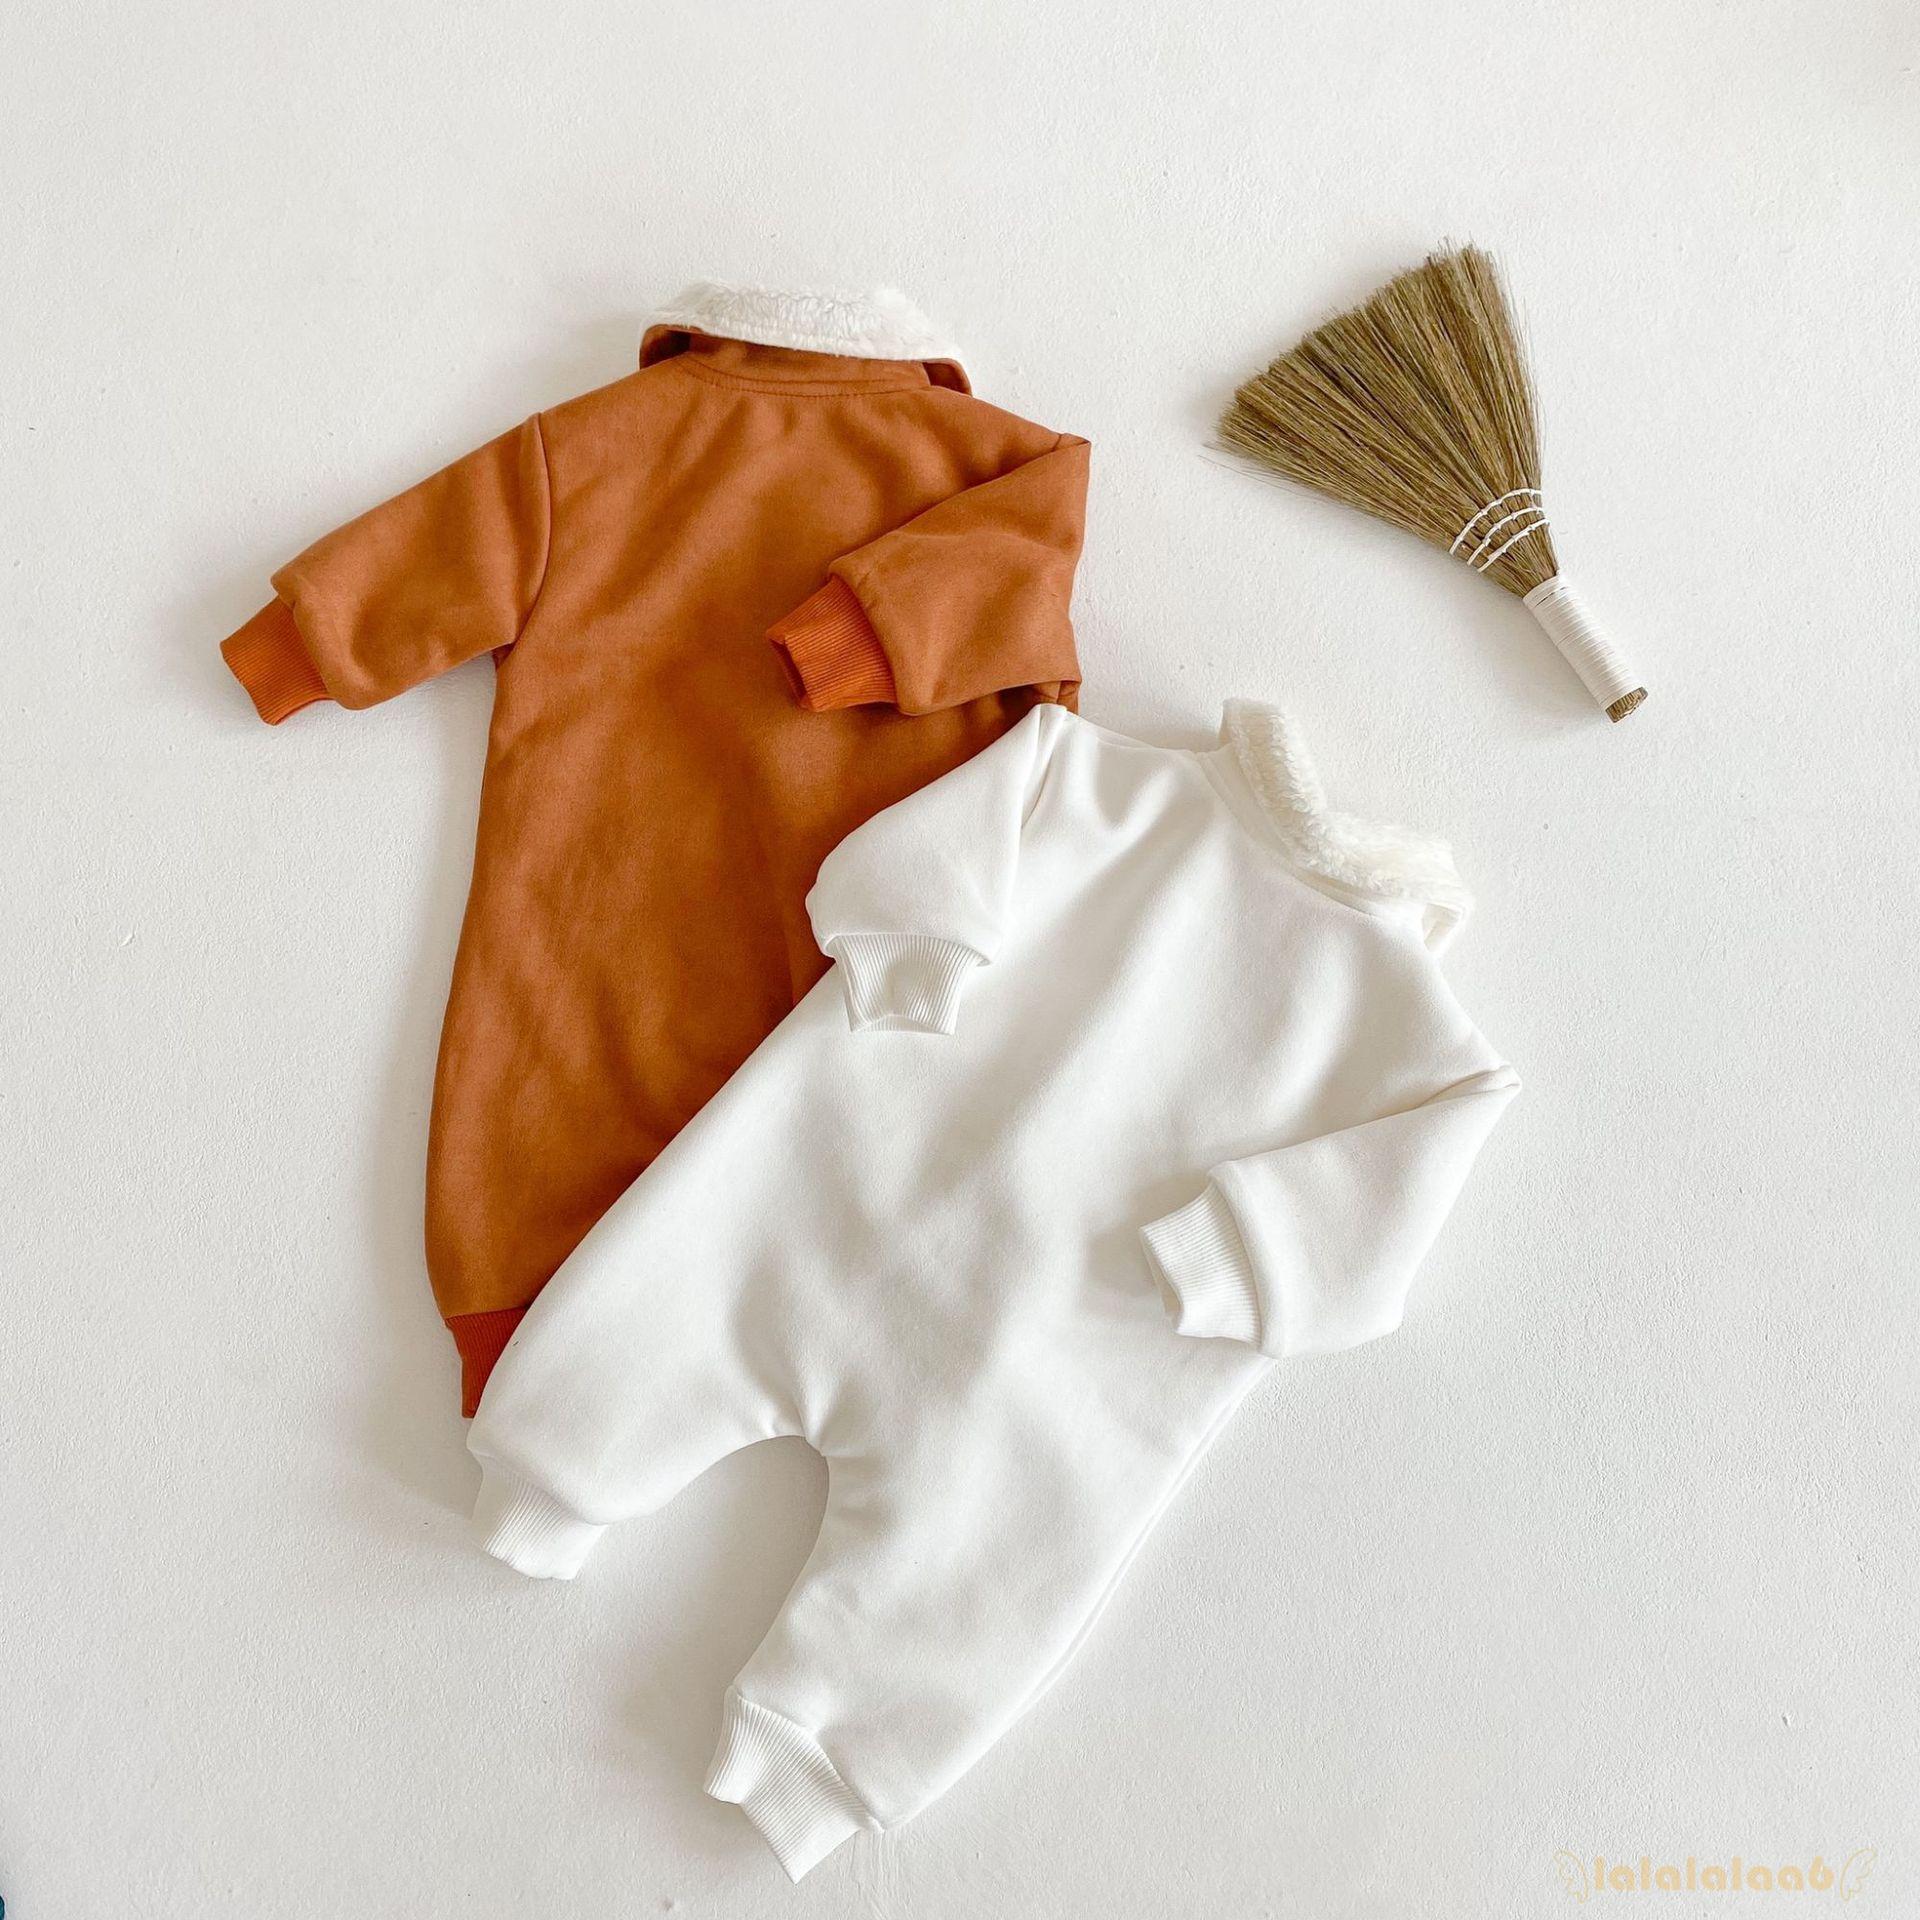 Bộ áo liền quần bằng vải da nhân tạo tay dài xinh xắn dành cho bé